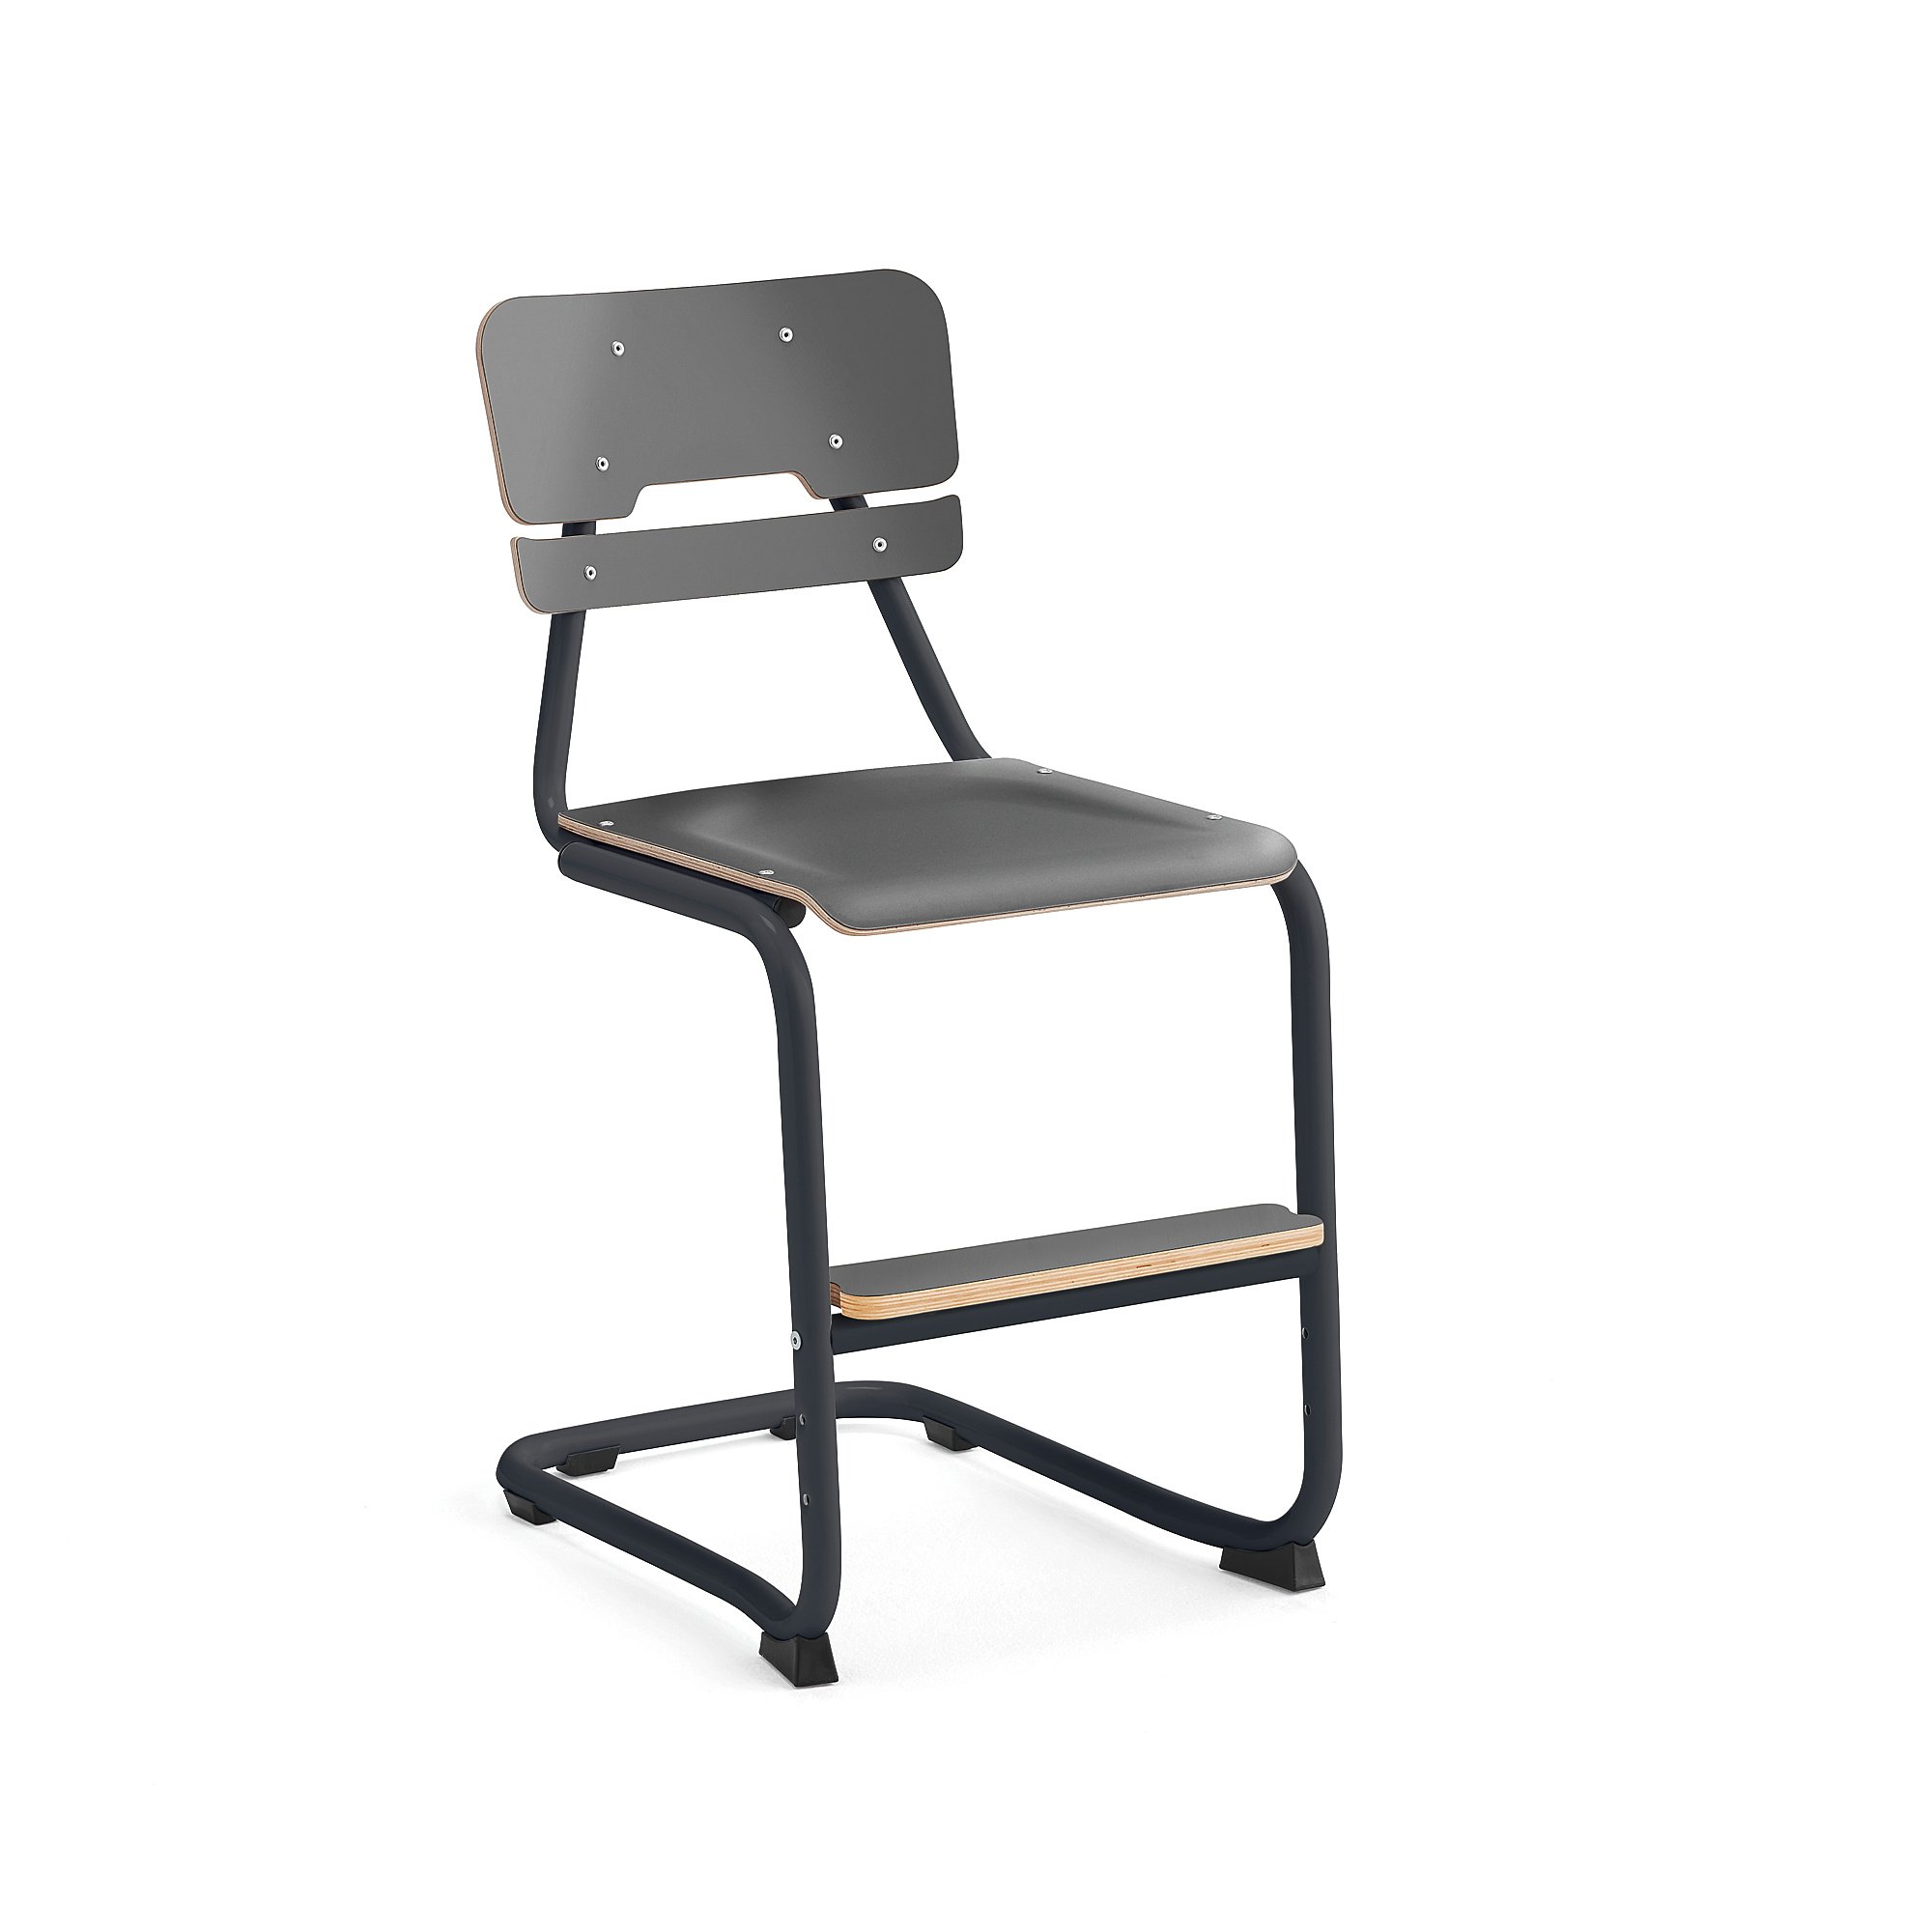 Školní židle LEGERE III, výška 500 mm, antracitově šedá, antracitově šedá